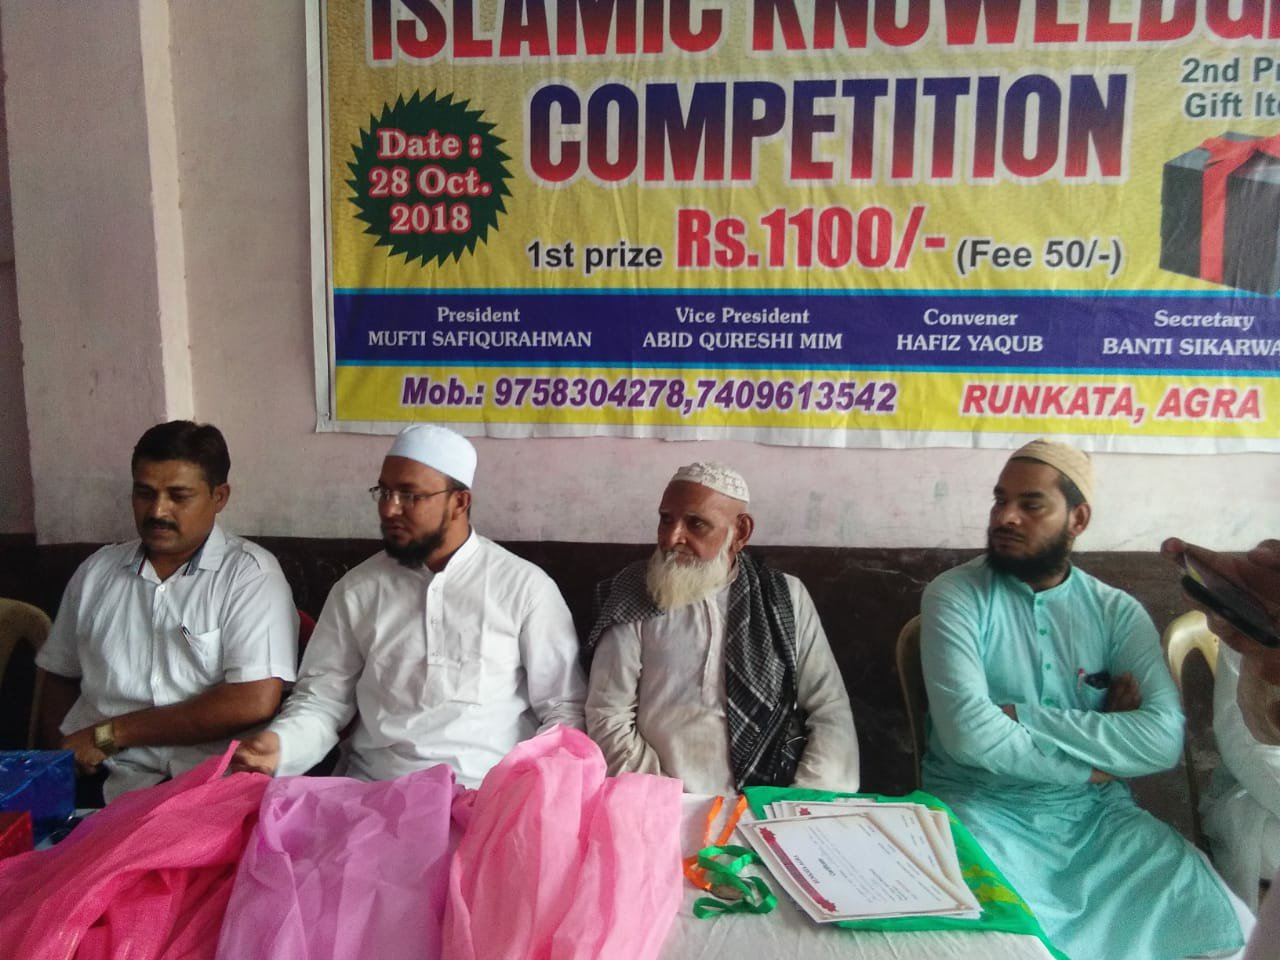 रुनकता में हुई इस्लामिक नाॅलेज कम्पटीशन प्रतियोगिता का आयोजन | New India Times